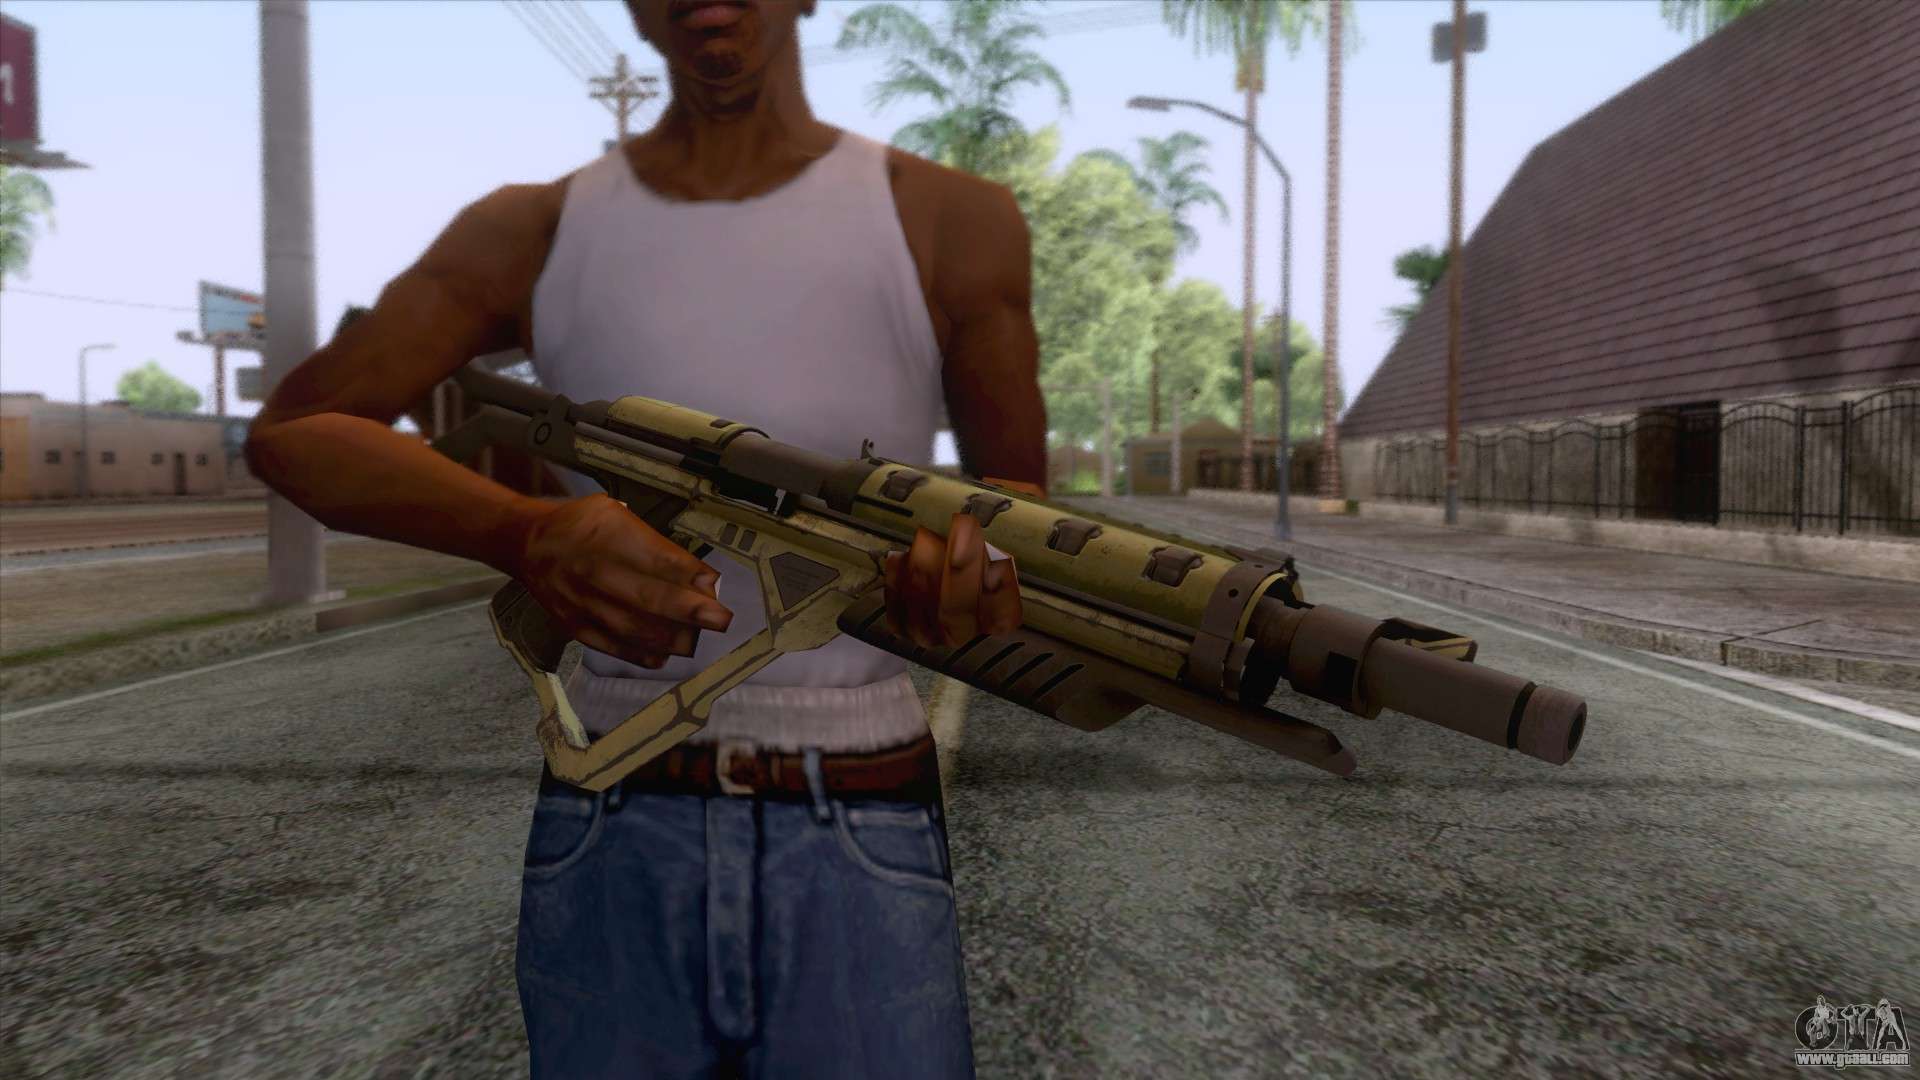 Evolve - Submachine Gun for GTA San Andreas